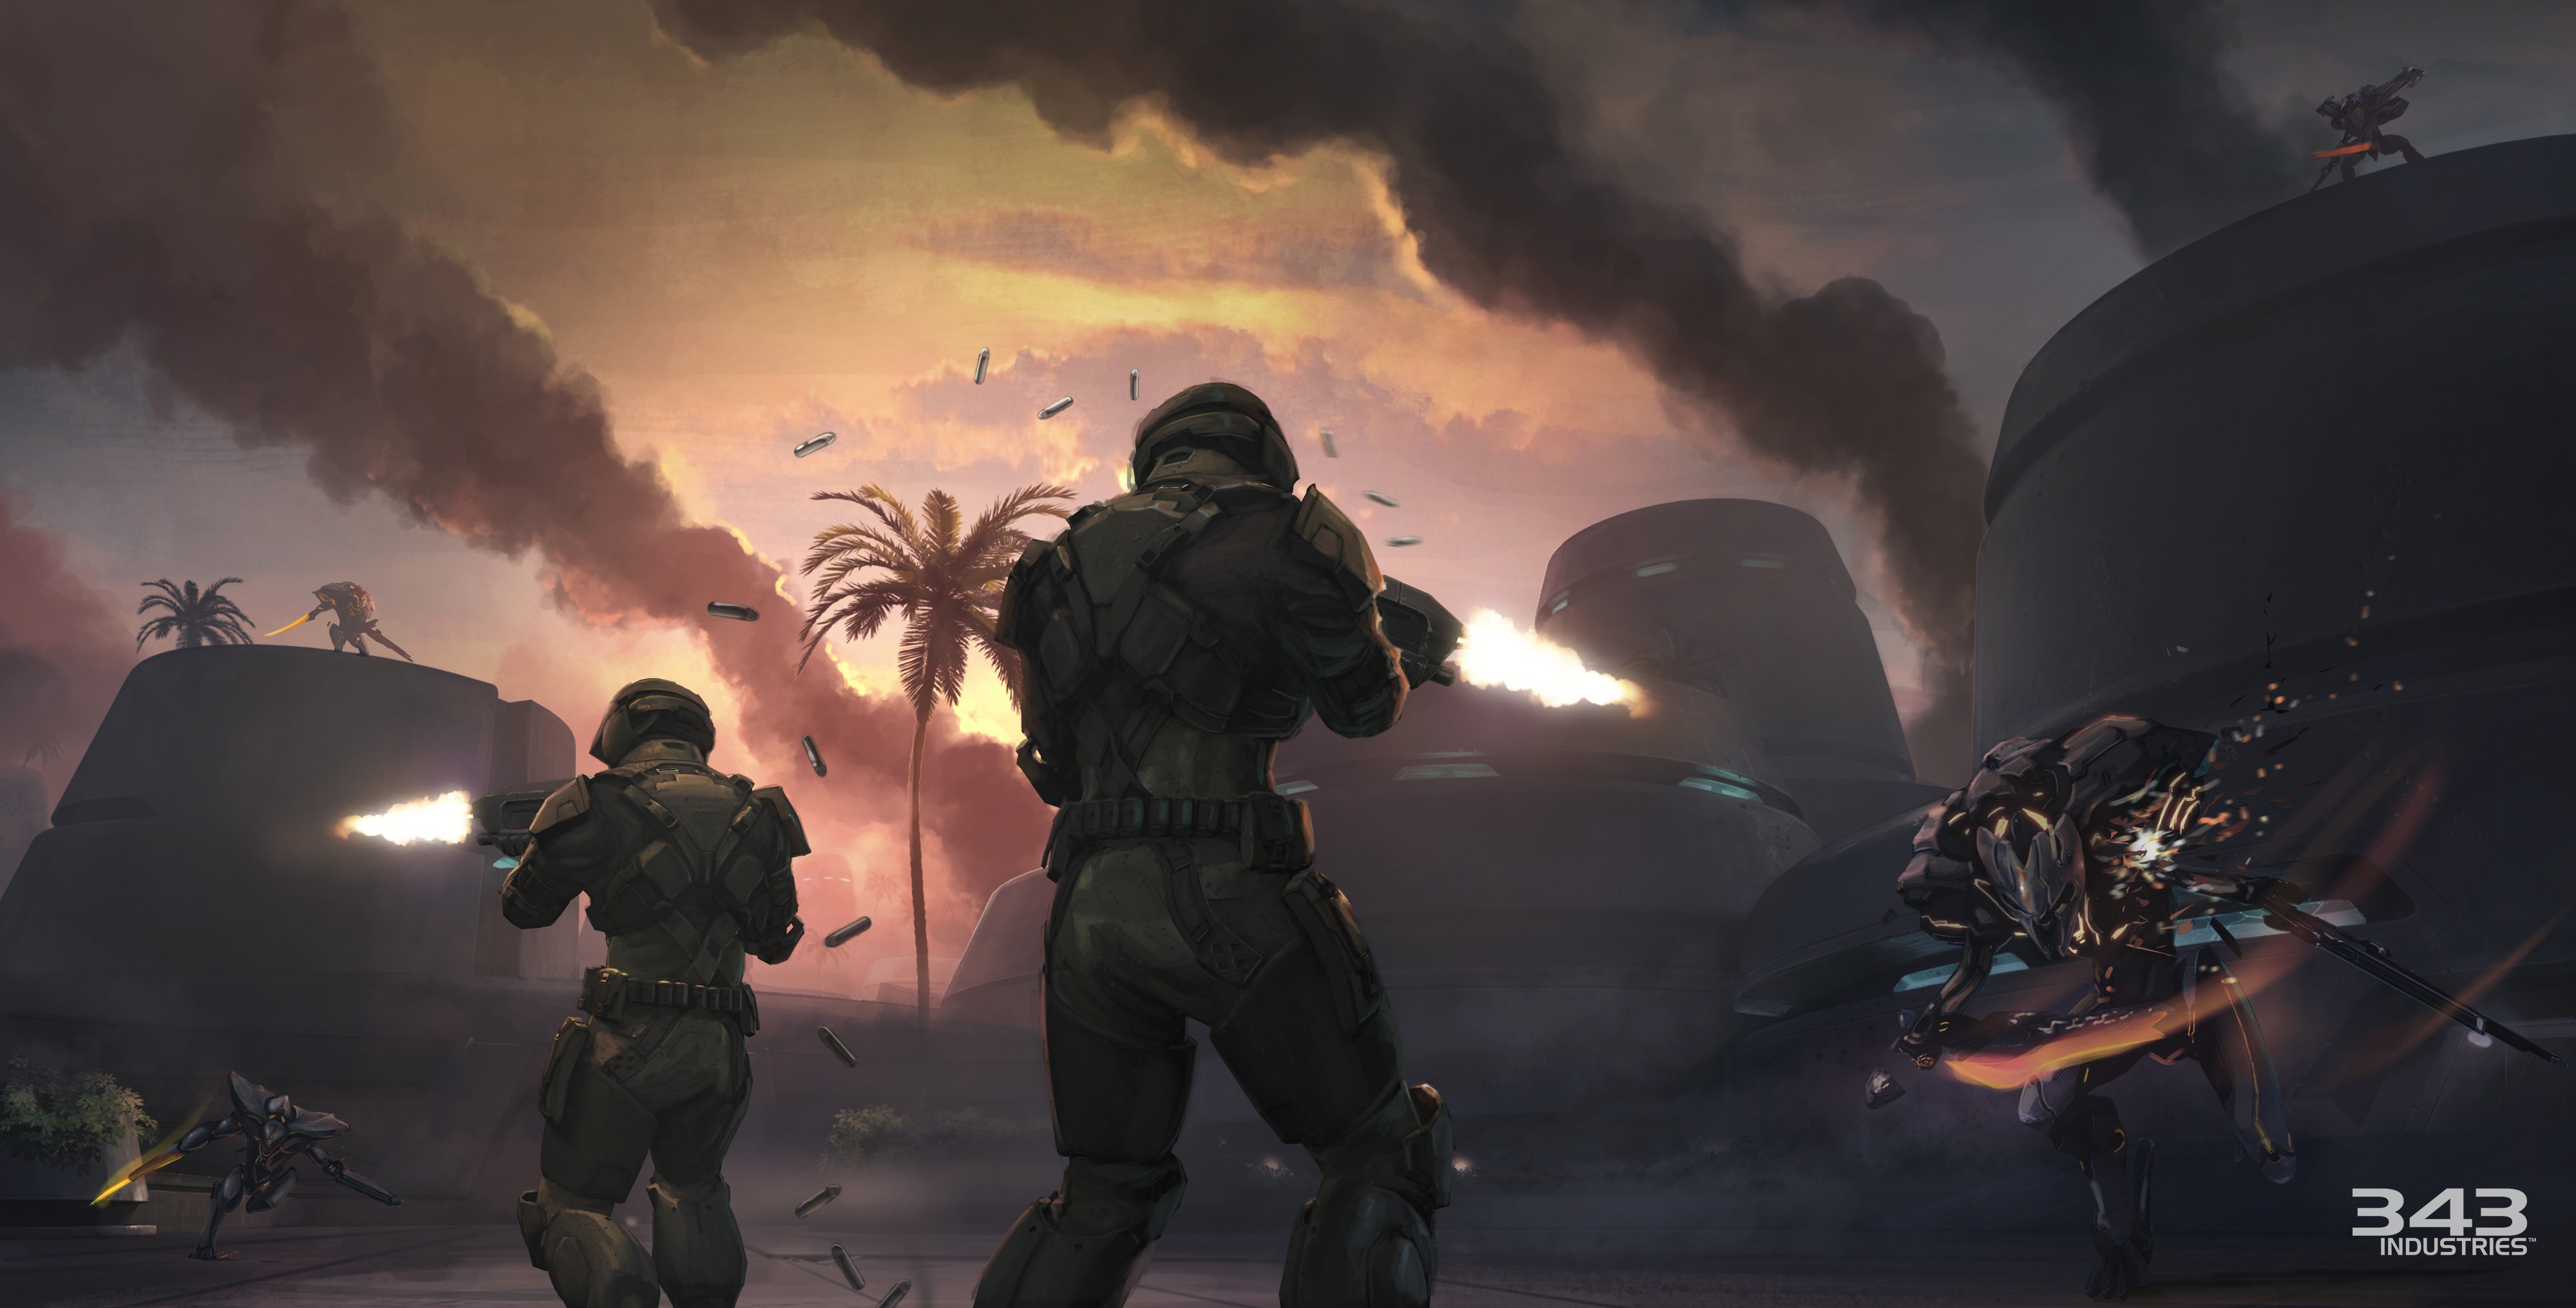 Los mejores fondos de pantalla de Halo: Spartan Strike para la pantalla del teléfono